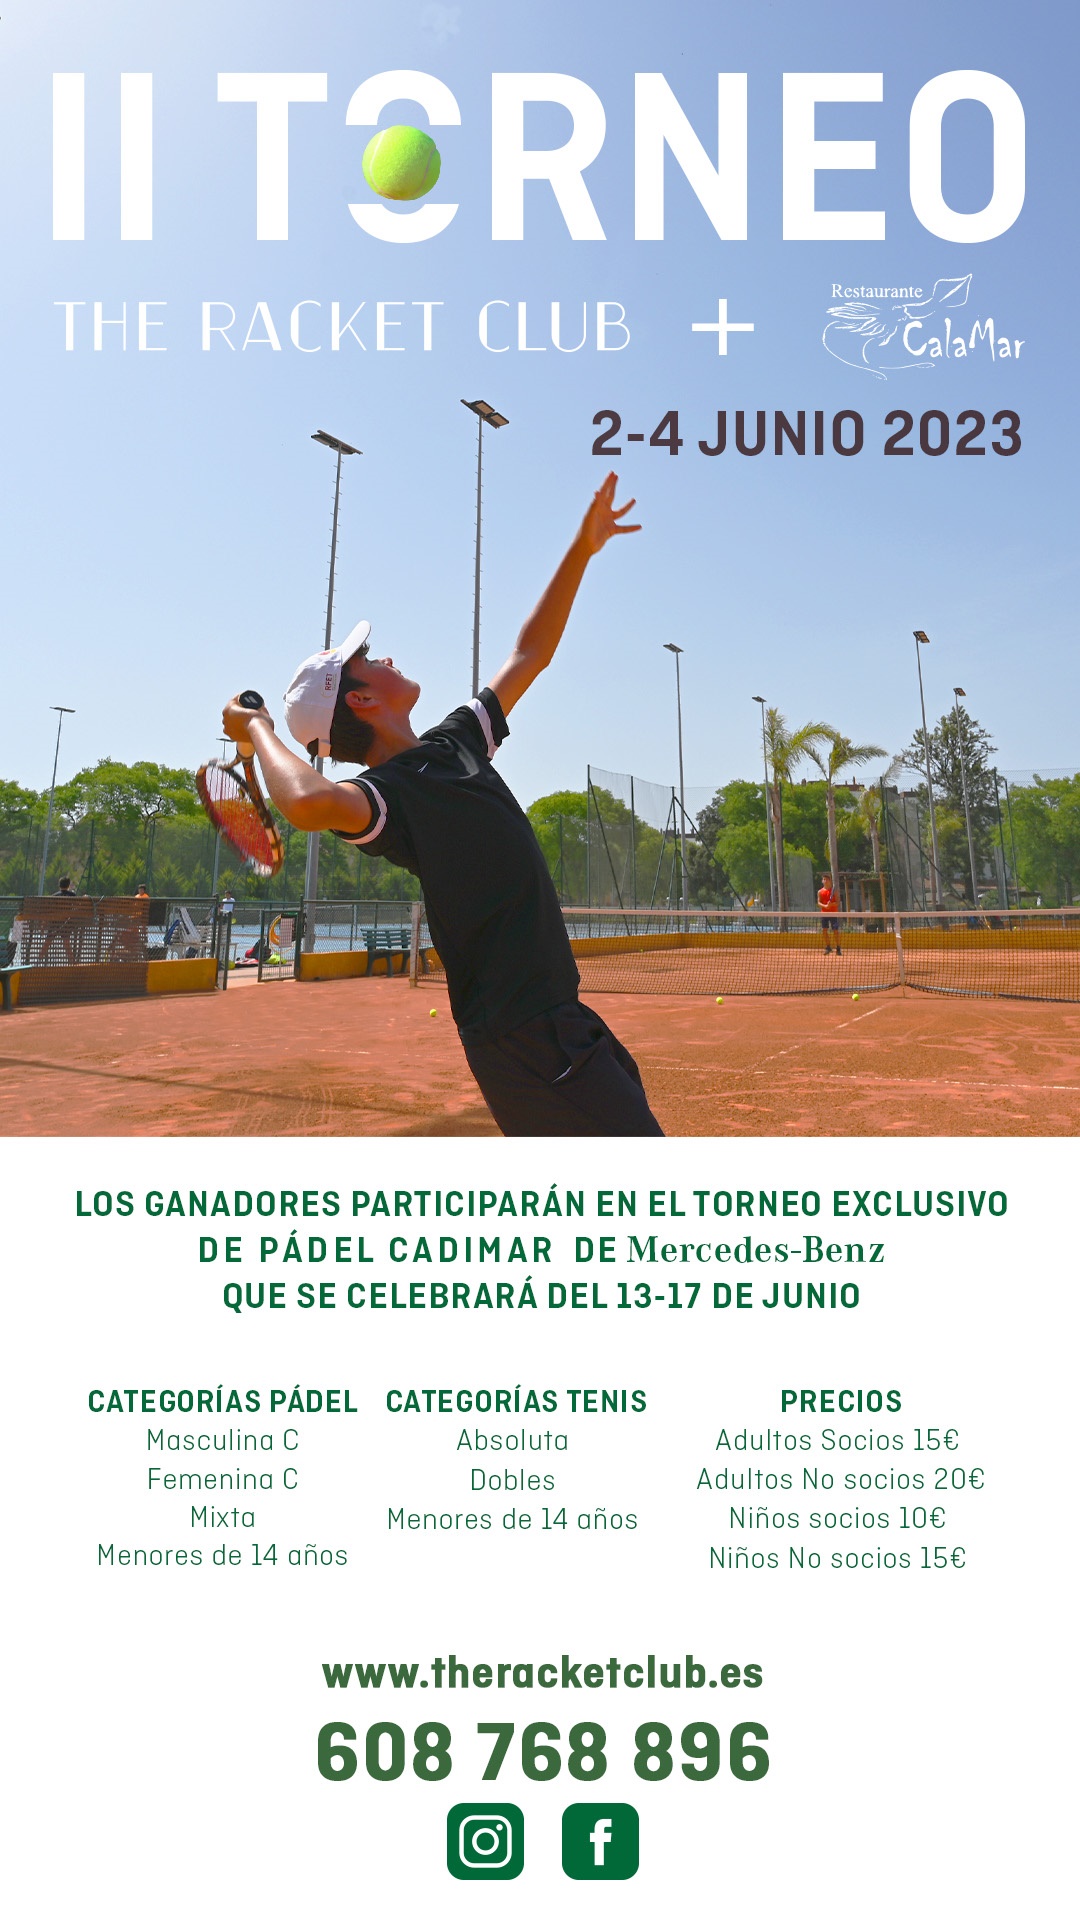 Torneo the racket club jerez 2023